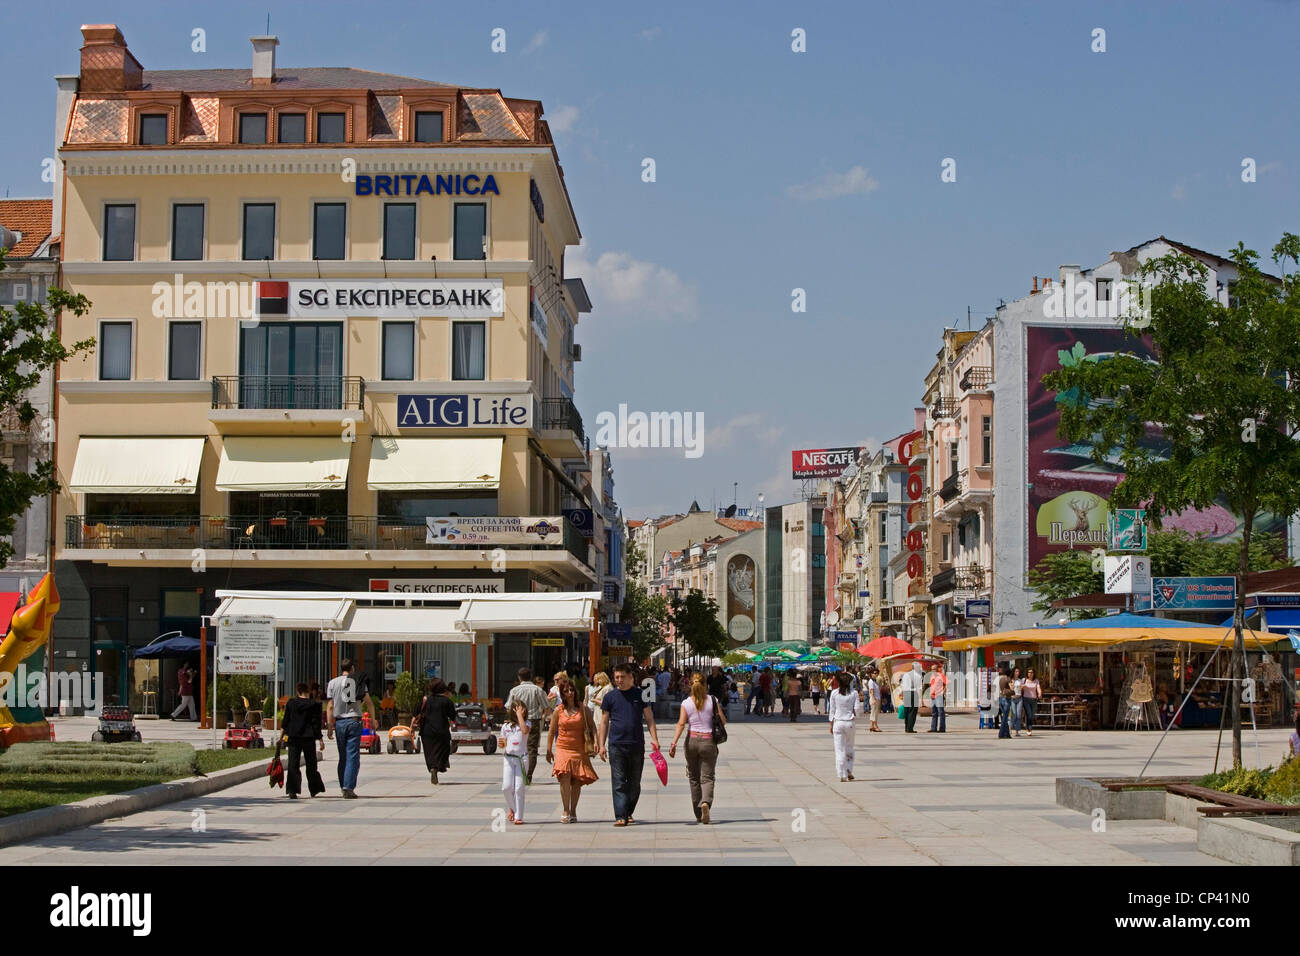 Bulgaria - Plovdiv. La carretera es nombrado después de Alexander I, príncipe de Bulgaria Foto de stock